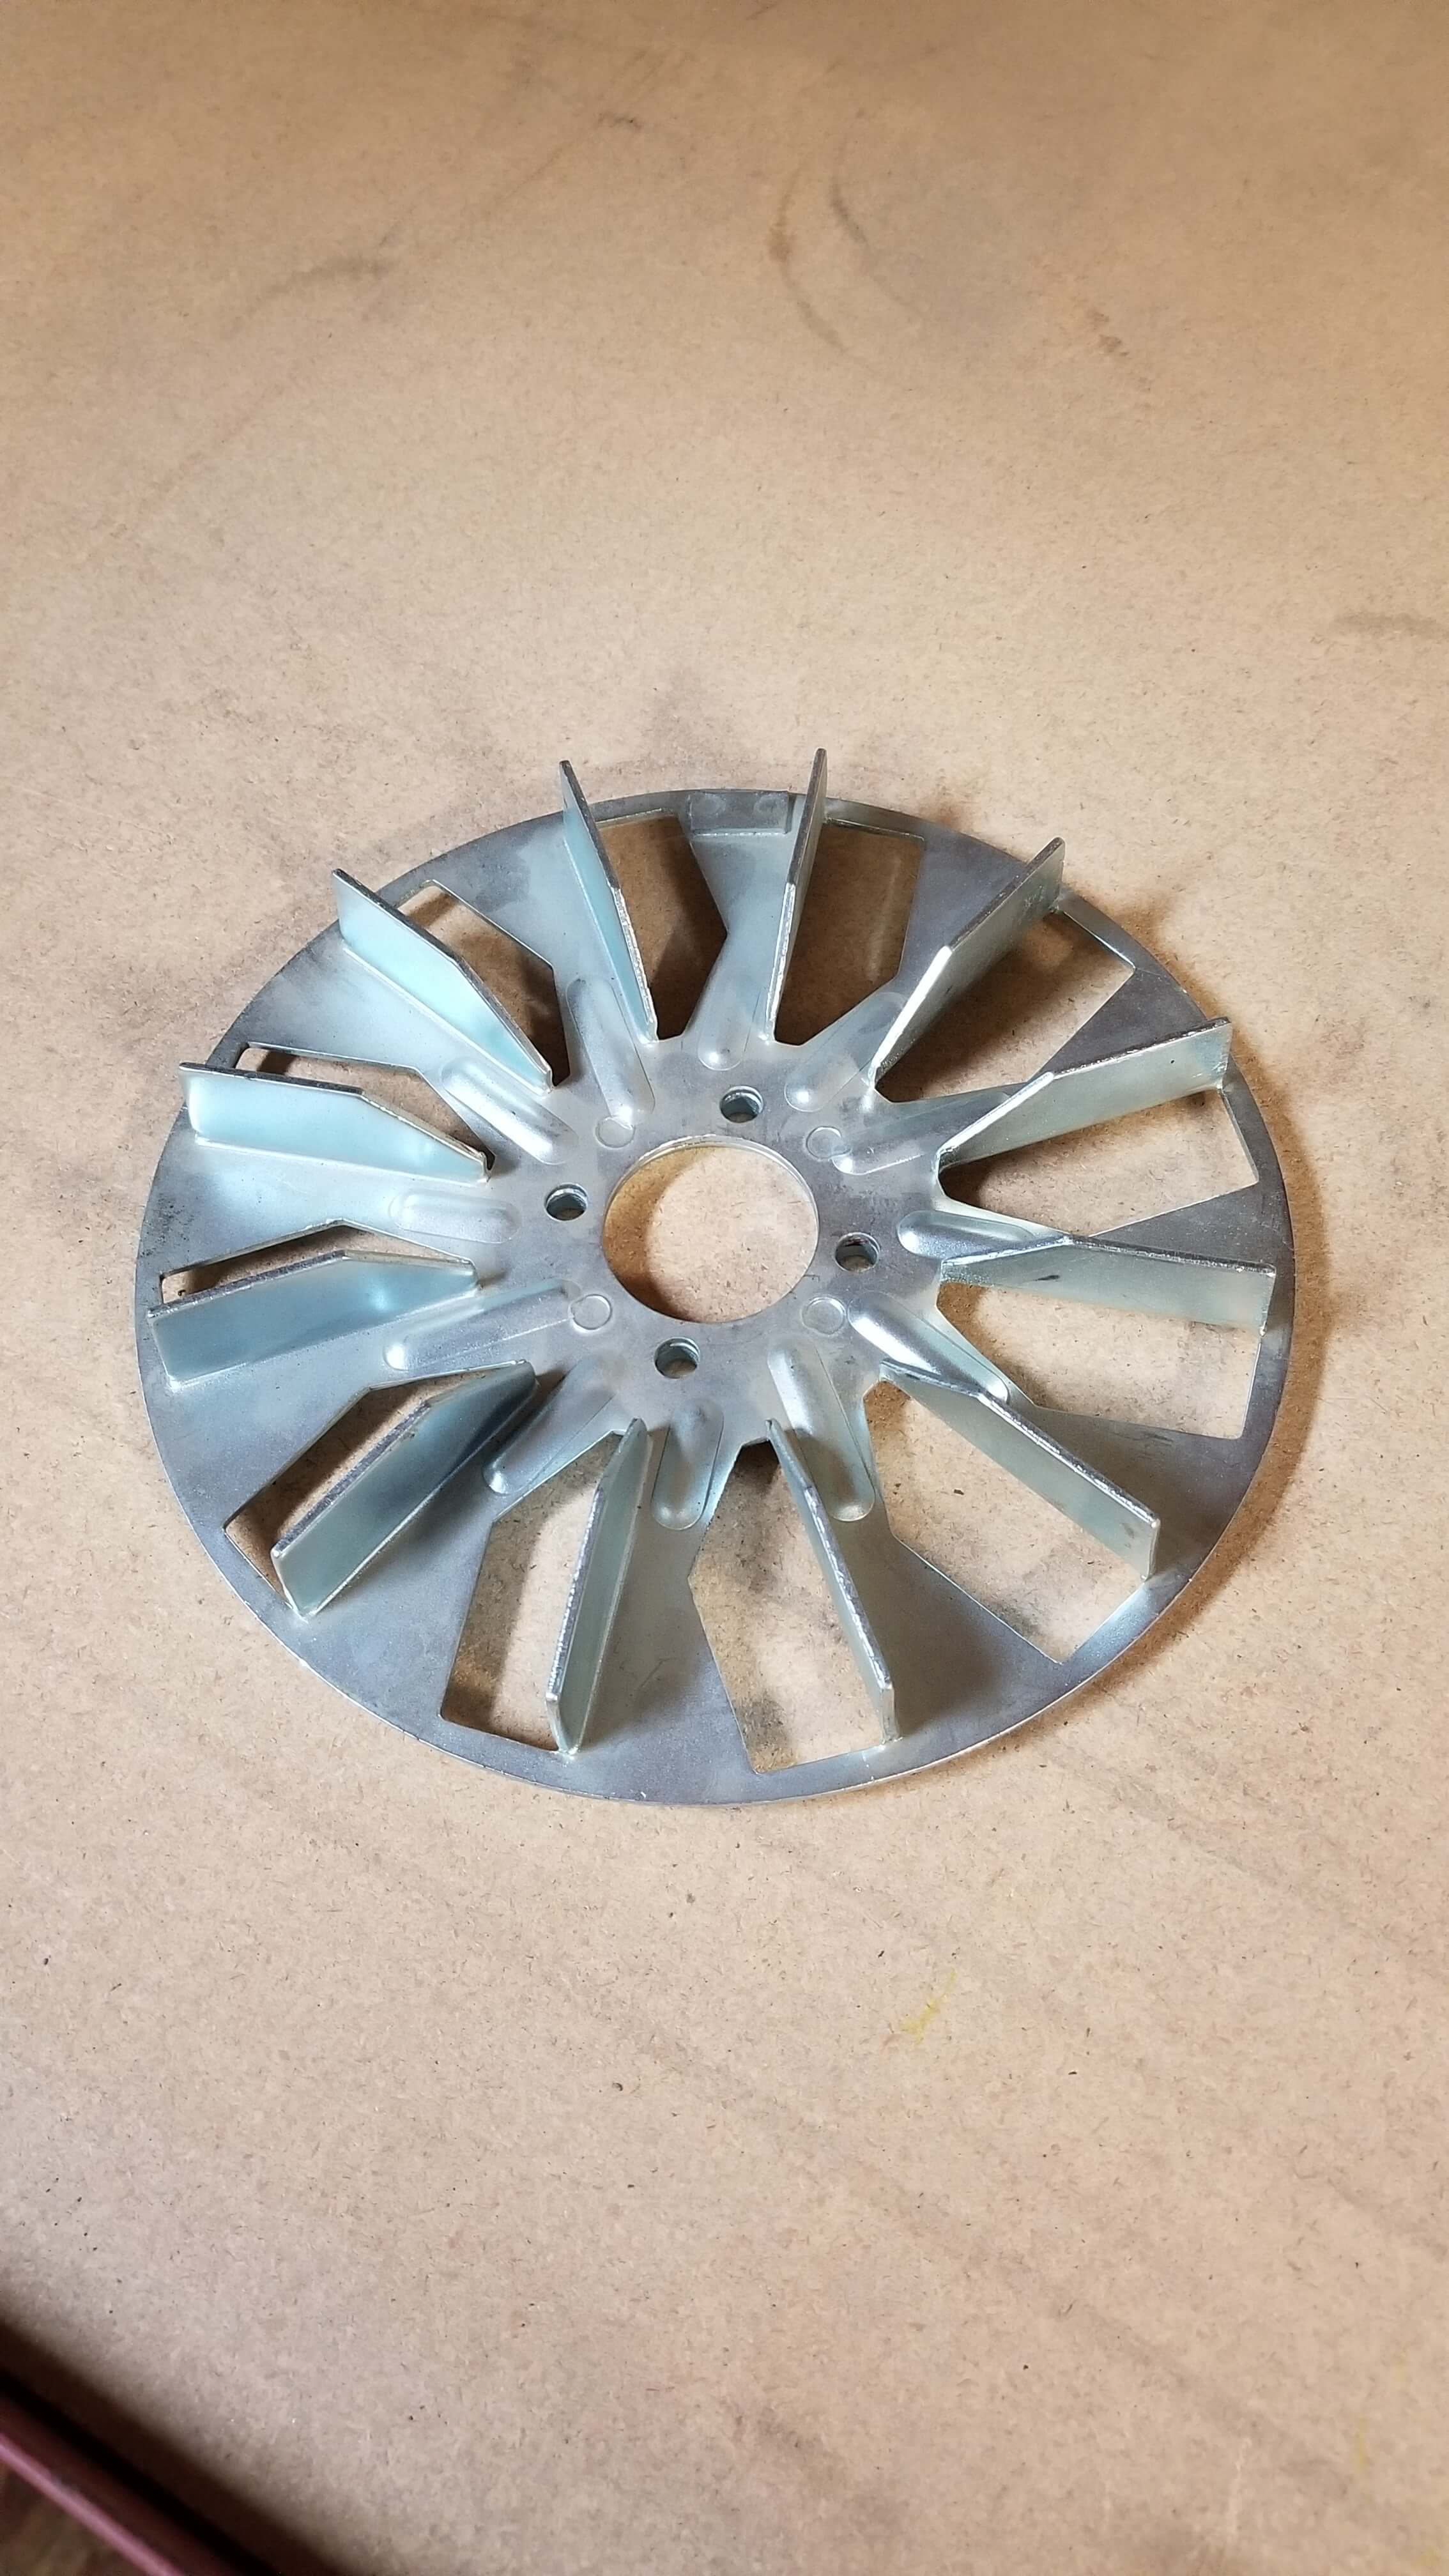 Stahl A3 Fan wheel 
P/N: 43 330 00 170
$450.00